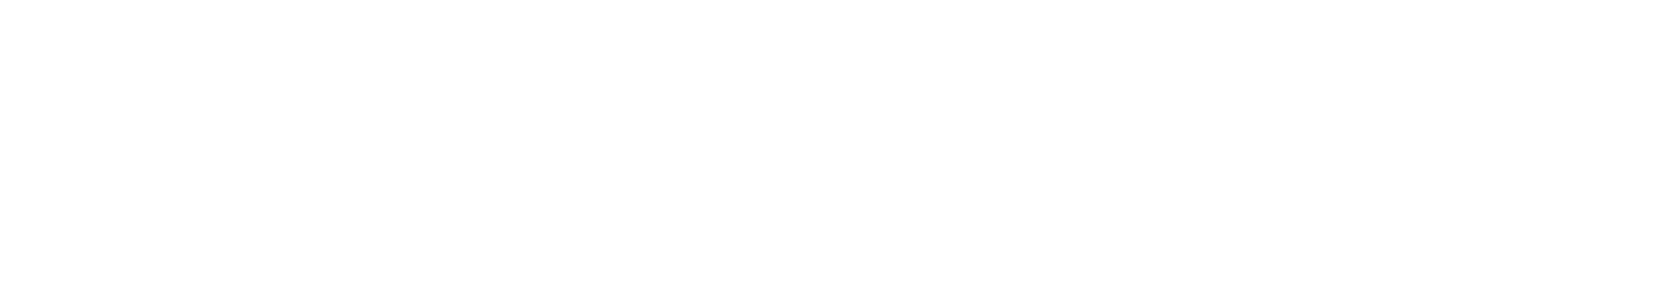 vdiv_logo